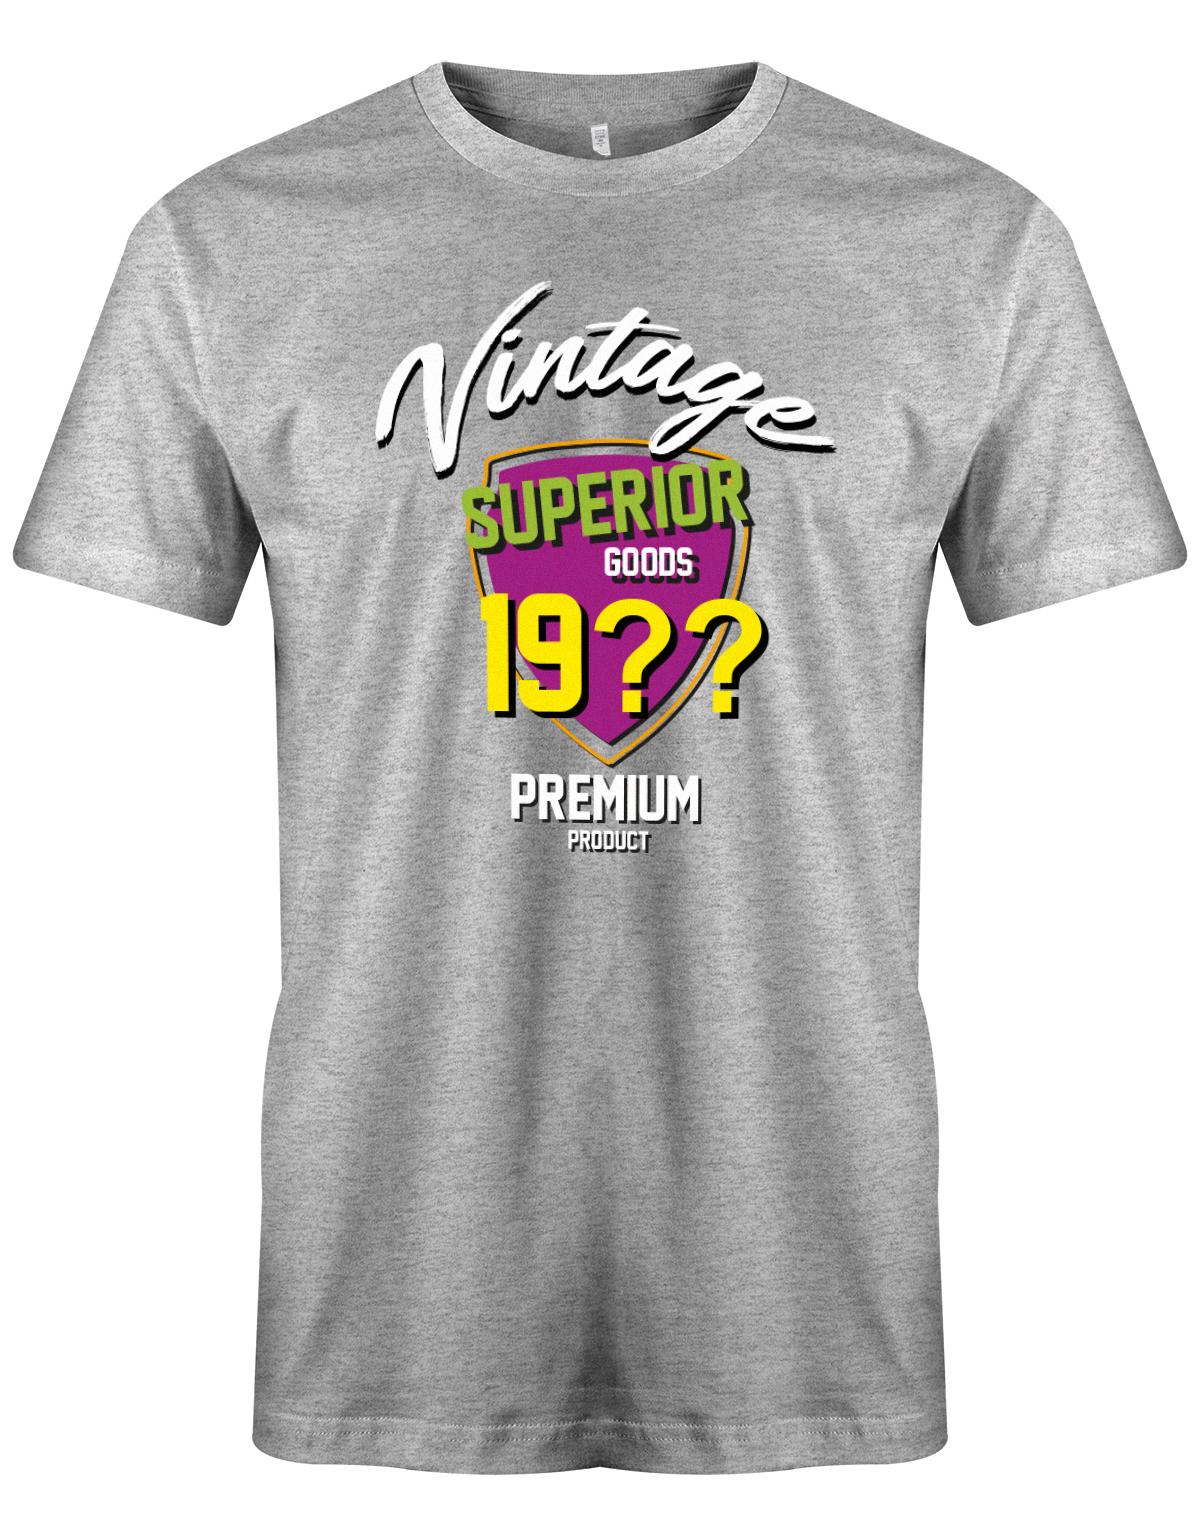 Geburtstag Tshirt für Männer Vintage Superior goods Personalisiert mit Geburtsjahr Premium Product Grau